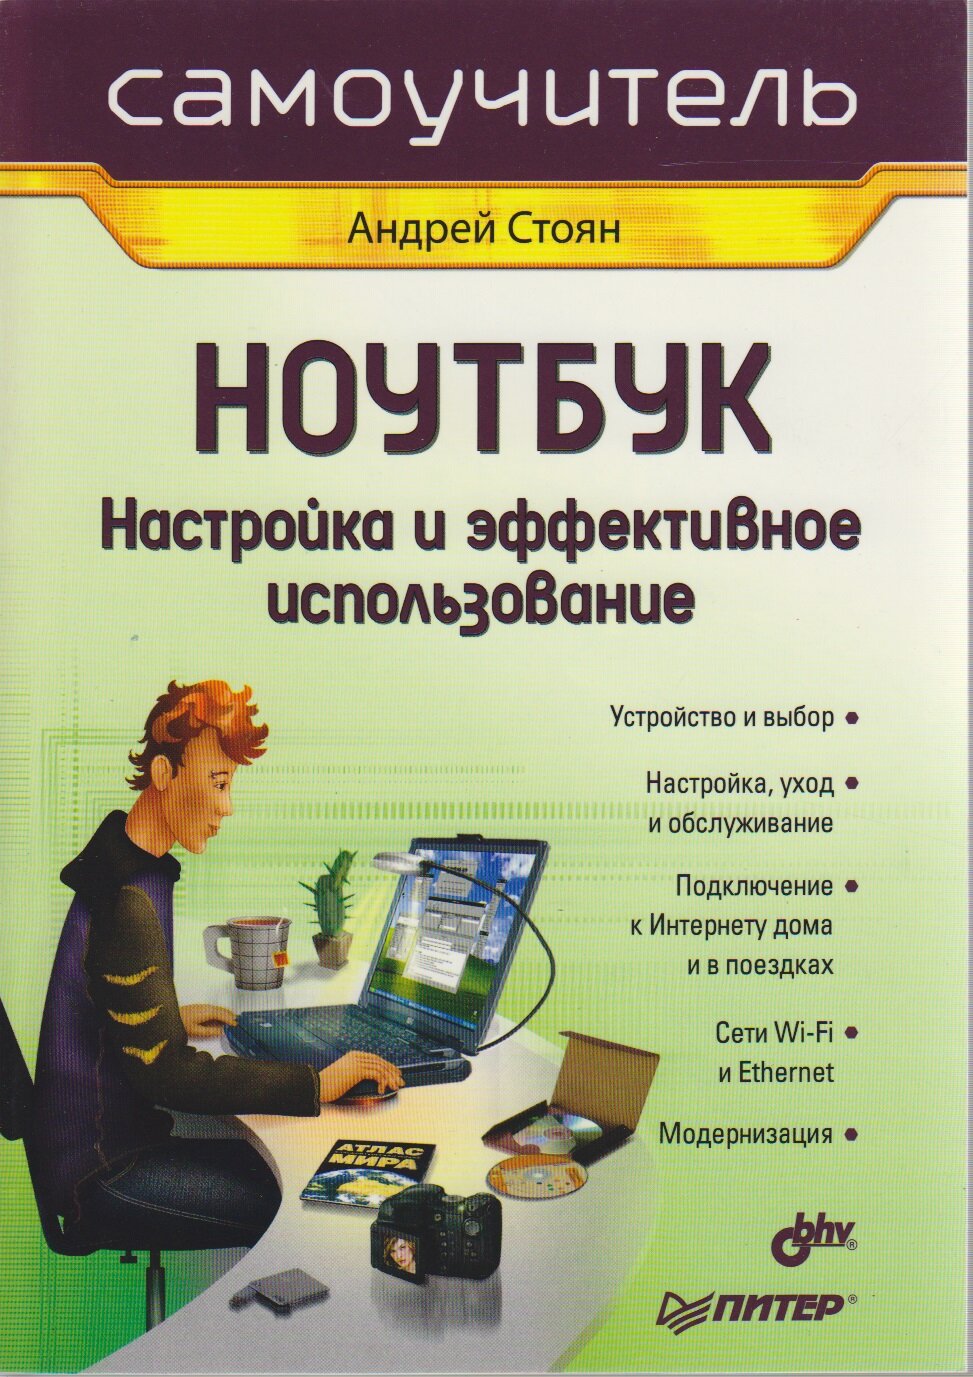 Книга "Самоучитель. Ноутбук. Настройка и эффективное использование" А. Стоян Санкт-Петербург 2007 Мя